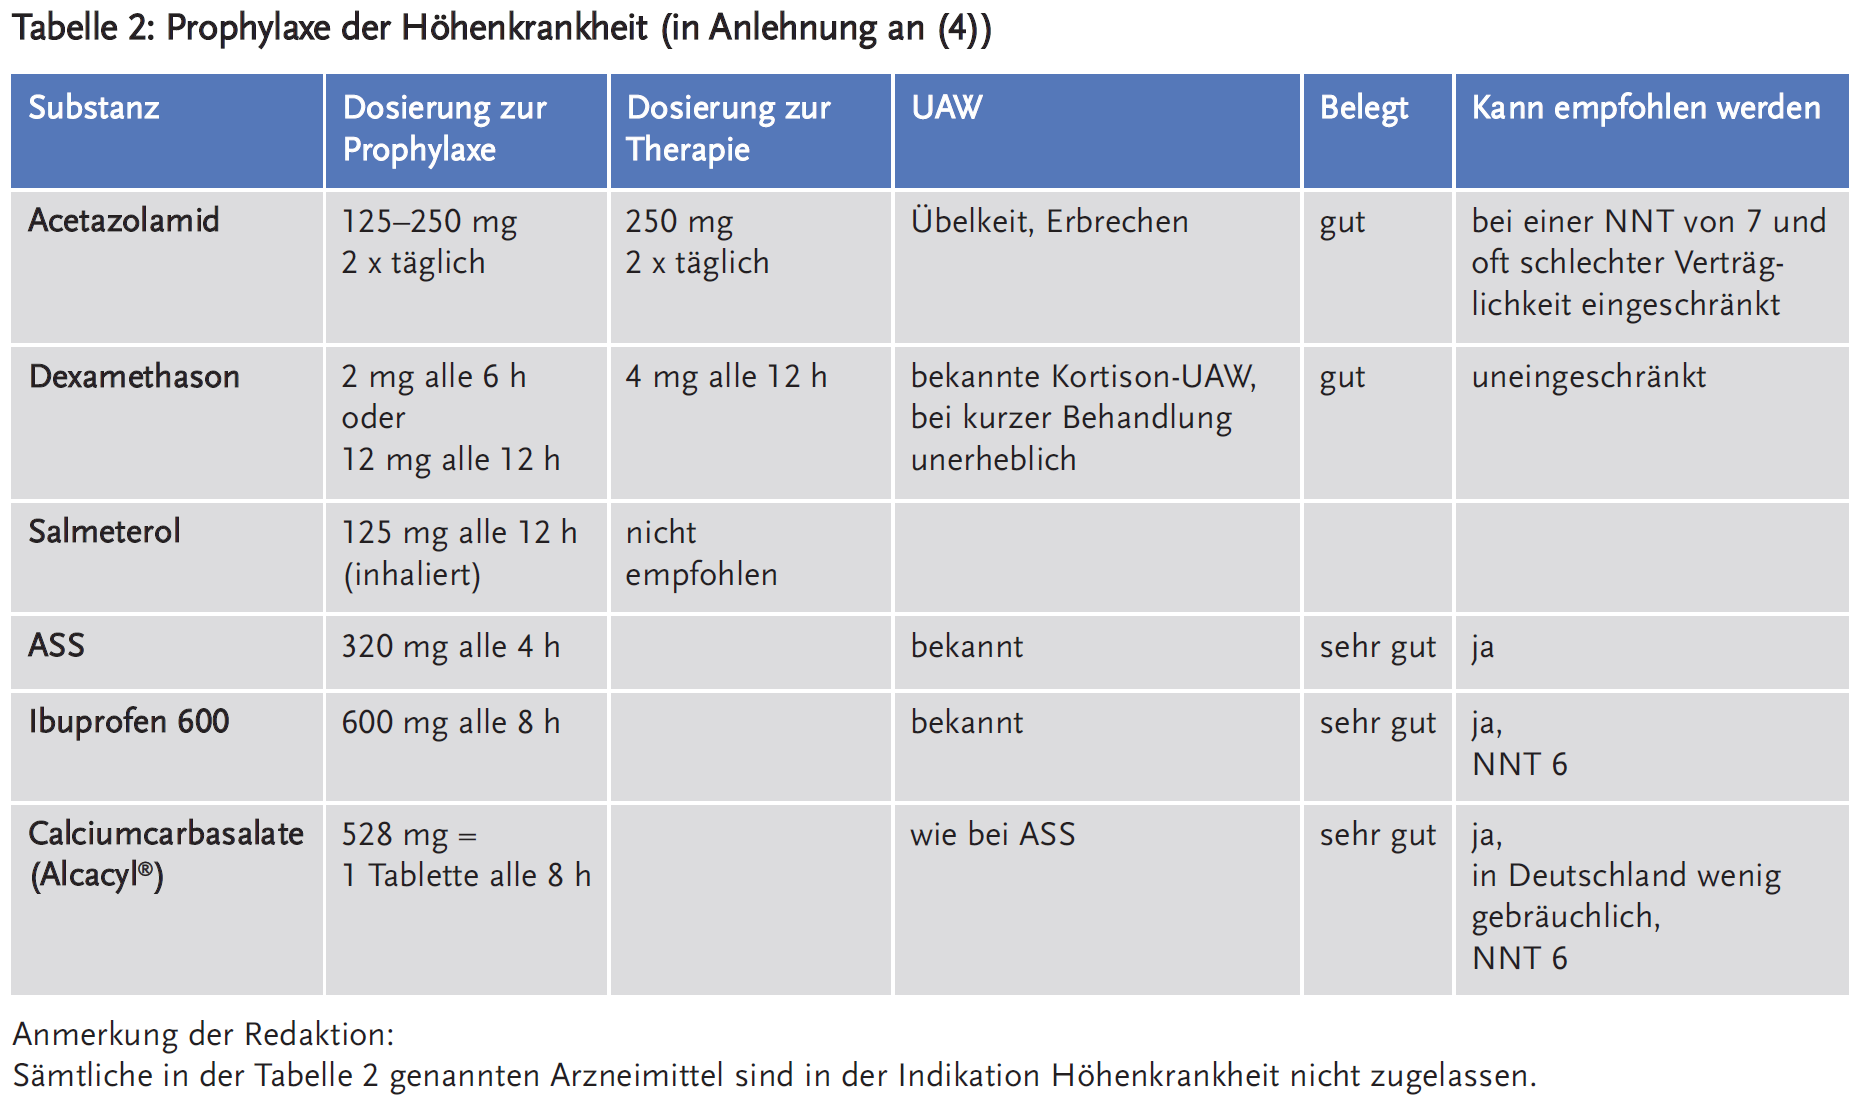 Tabelle 2: Prophylaxe der Höhenkrankheit (in Anlehnung an (4))